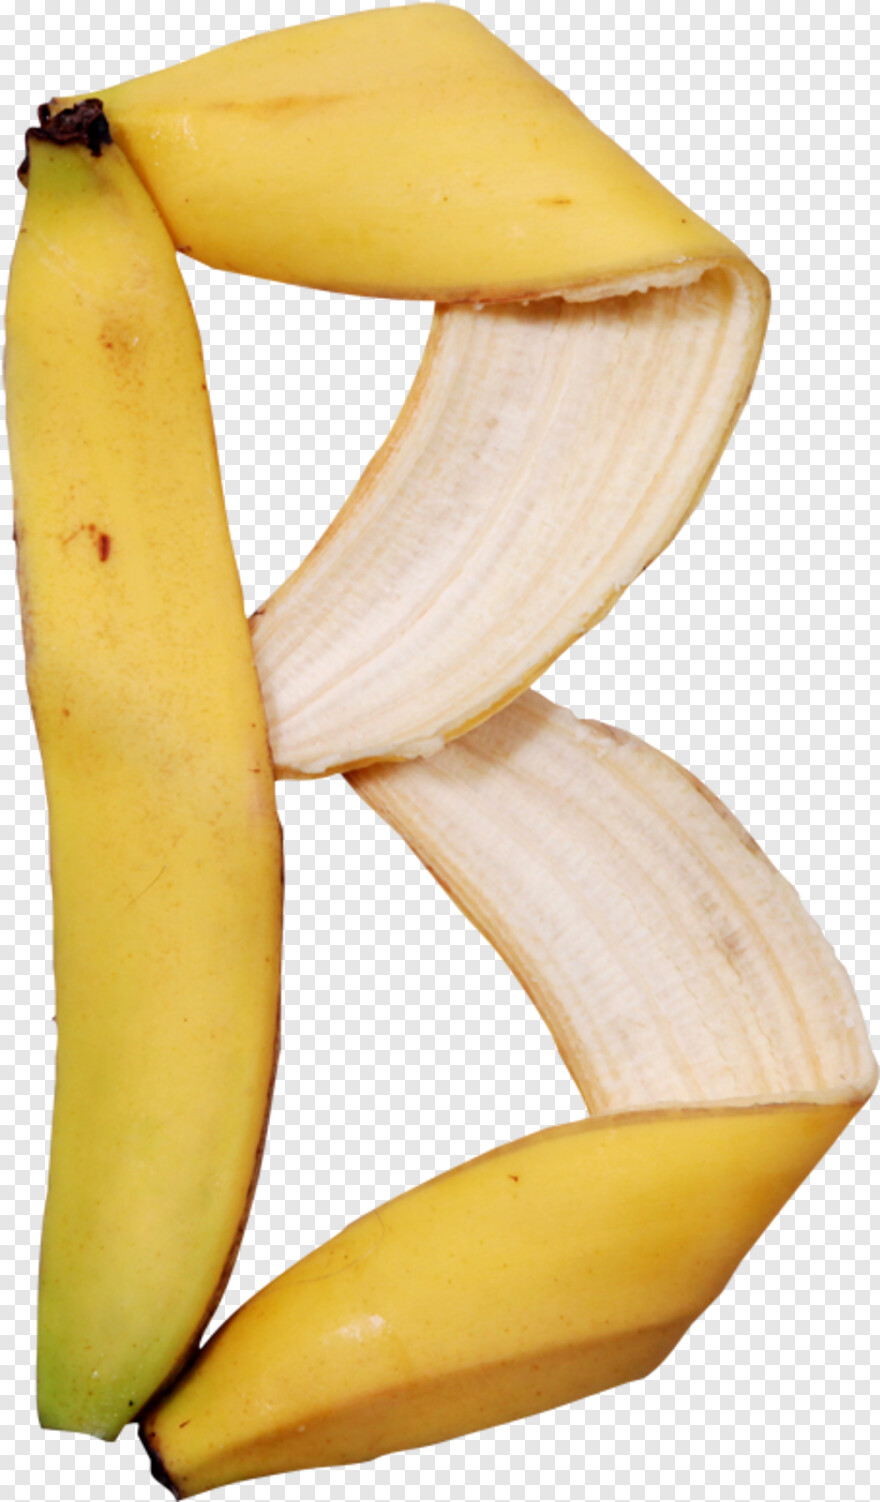 banana-leaf # 544658